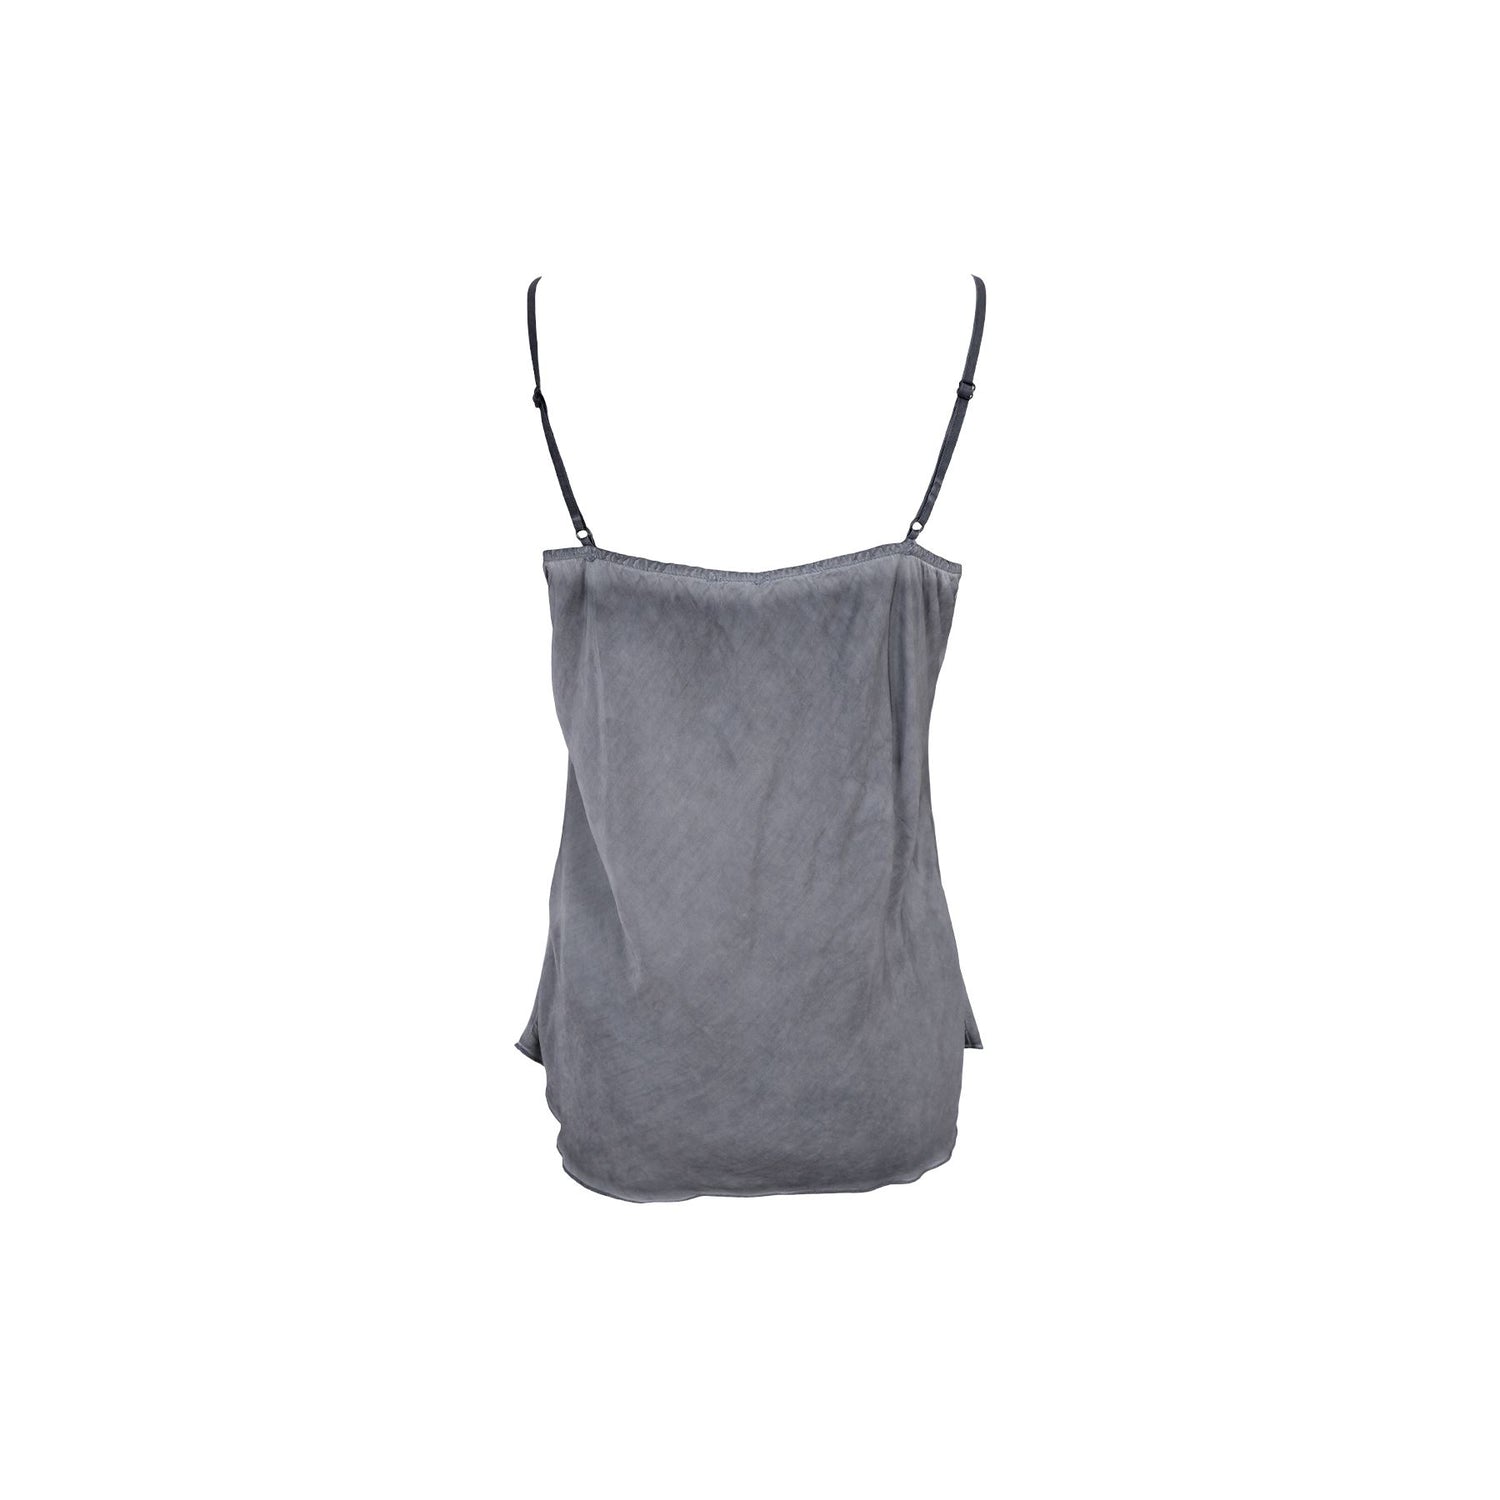 Lou Satin Top | Grey Shirts & Tops Black Colour 